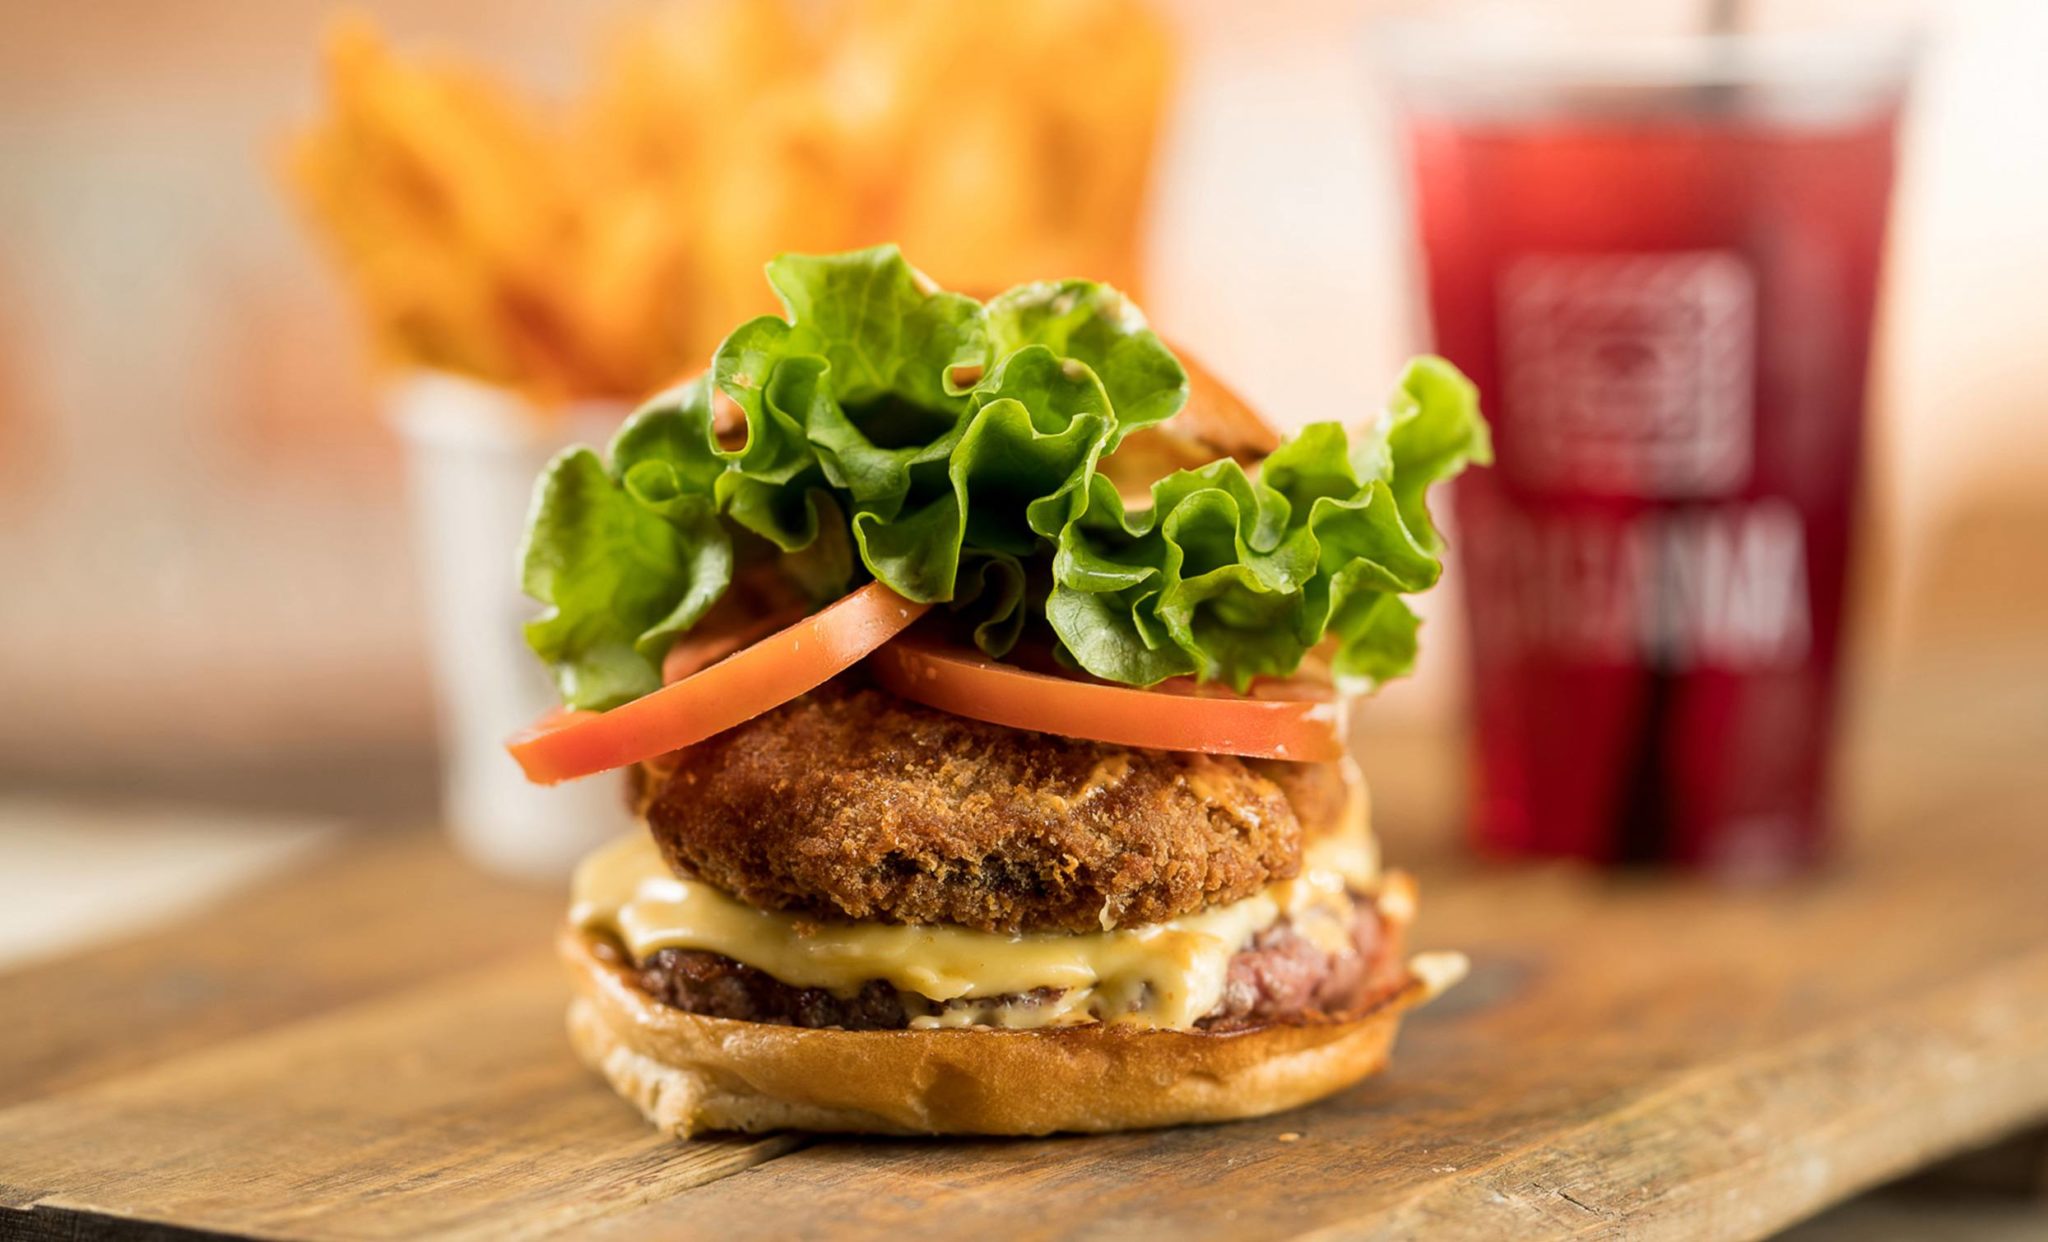 flip flop burger - Hambúrguer sem frescura e cheio de sabor no Jardins!